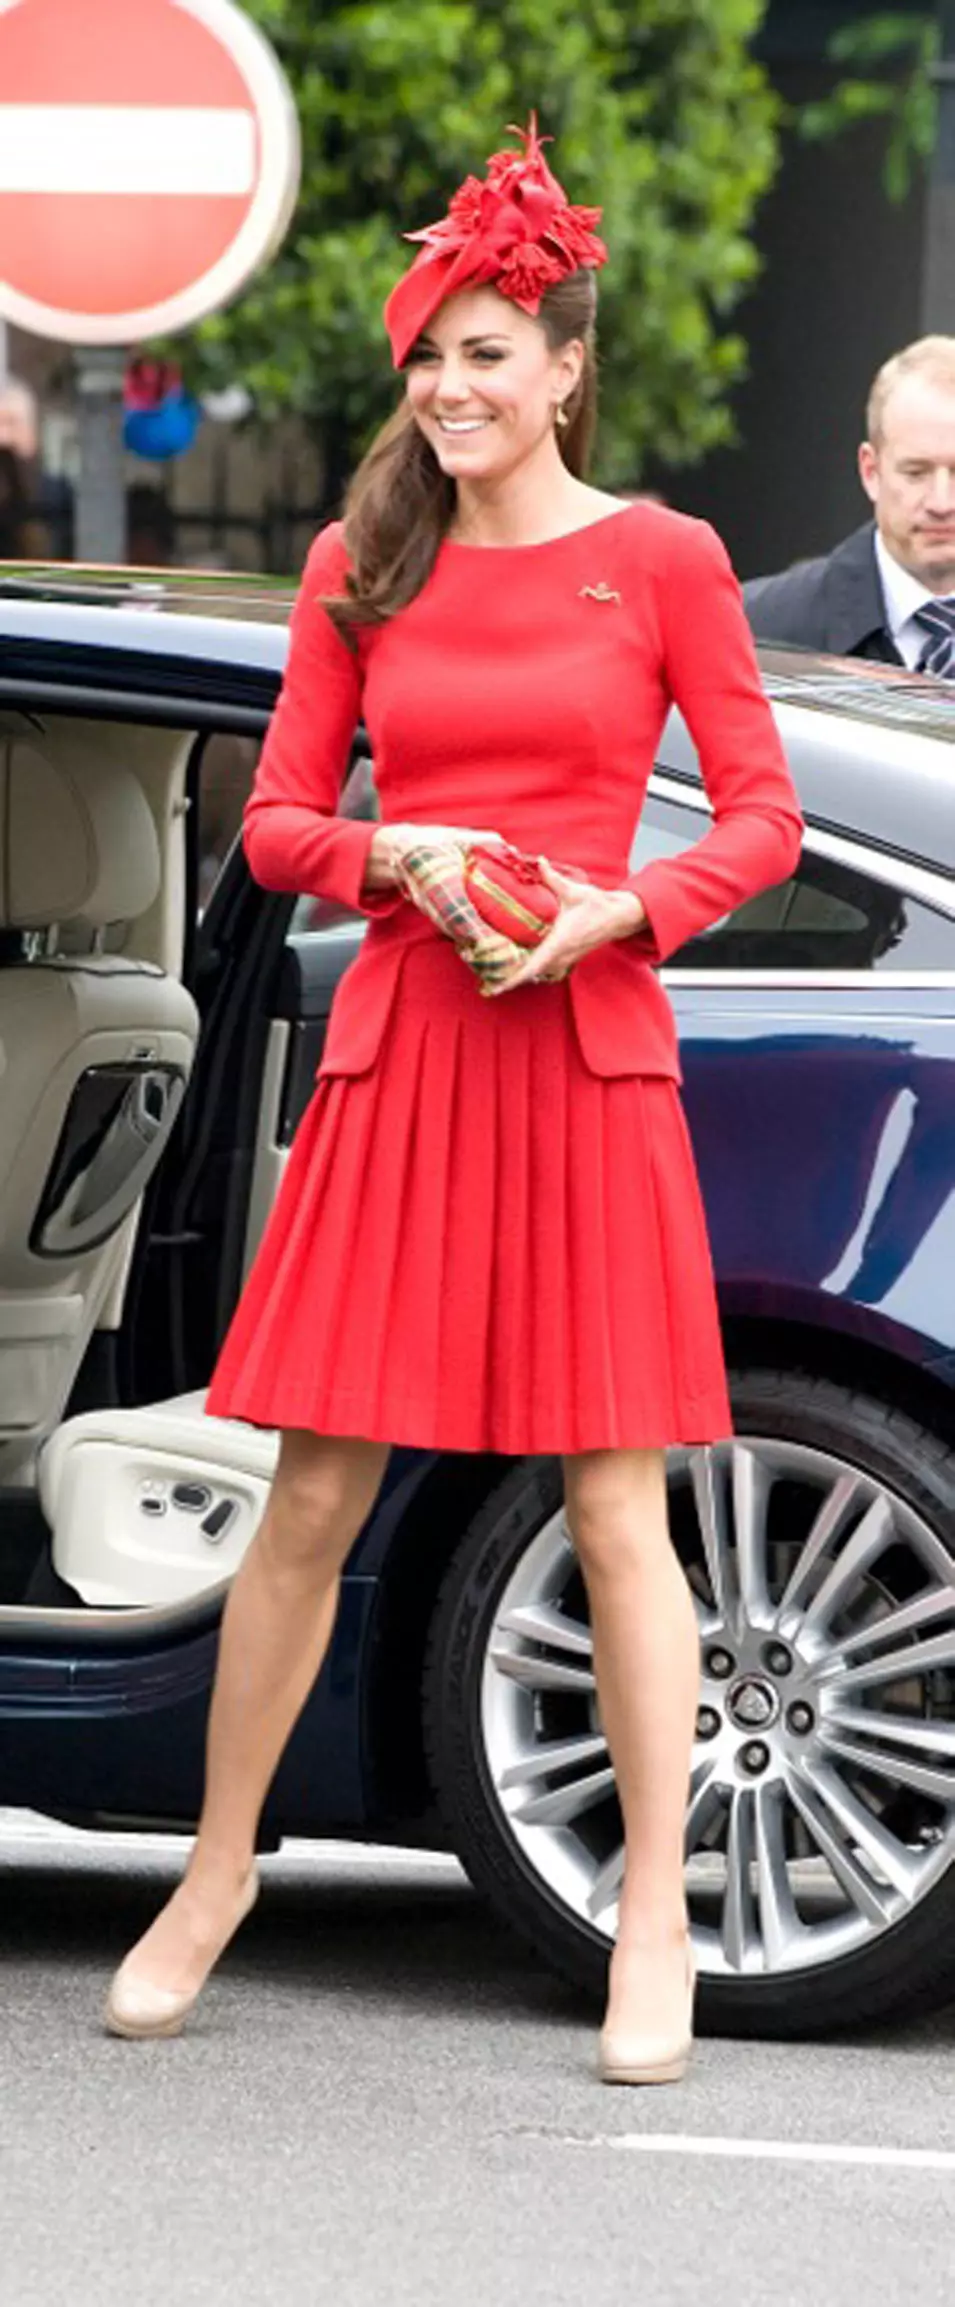 קייט מידלטון בשמלת אלכסנדר מקווין וכובע סילביה פלטצ'ר לג'ון לוק אנד קו בעת משט חגיגי של 1,000 כלי שיט בנהר התמזה במסגרת סוף שבוע חגיגות 60 שנה לכהונת המלכה אליזבת השנייה, 3 יוני 2012